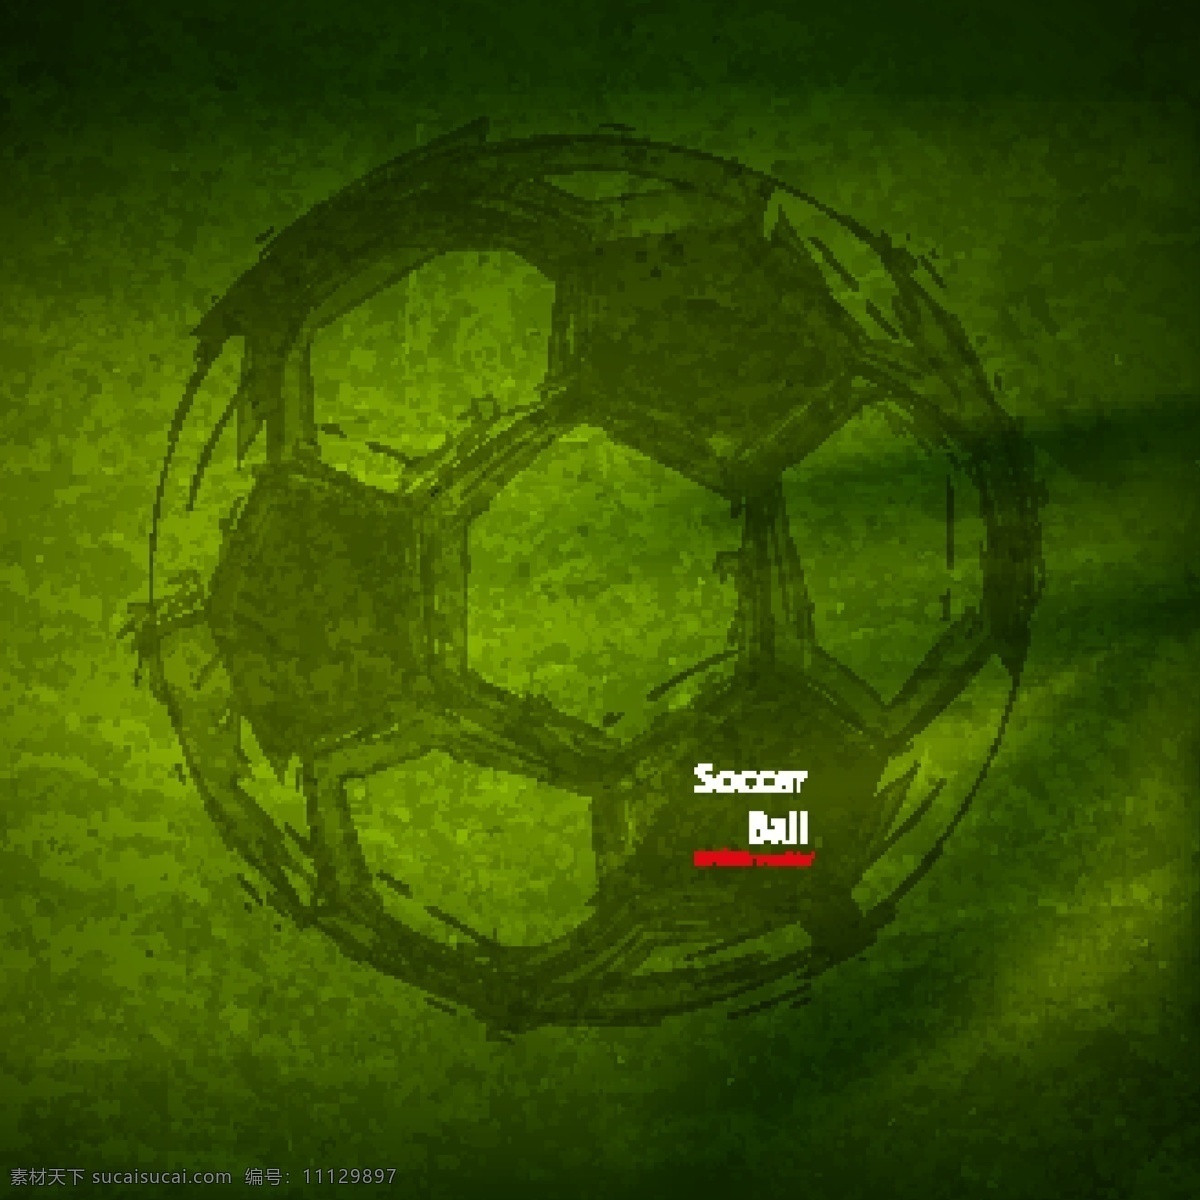 创意 足球 矢量 海报 体育 体育运动 比赛 赛事 手绘 球场 运动 插画 背景 画册 文化艺术 绿色